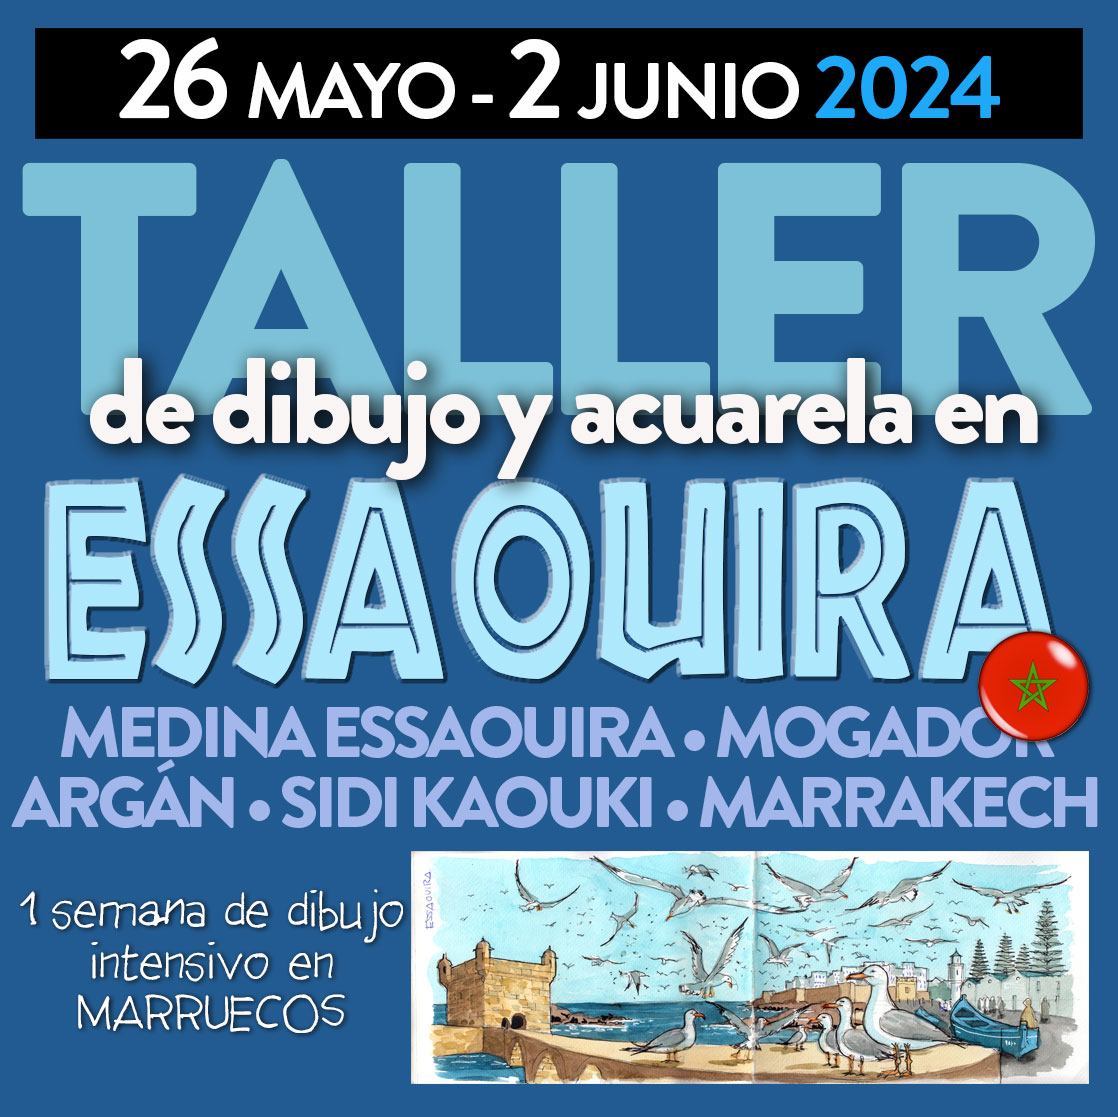 Taller Essaouira 2024